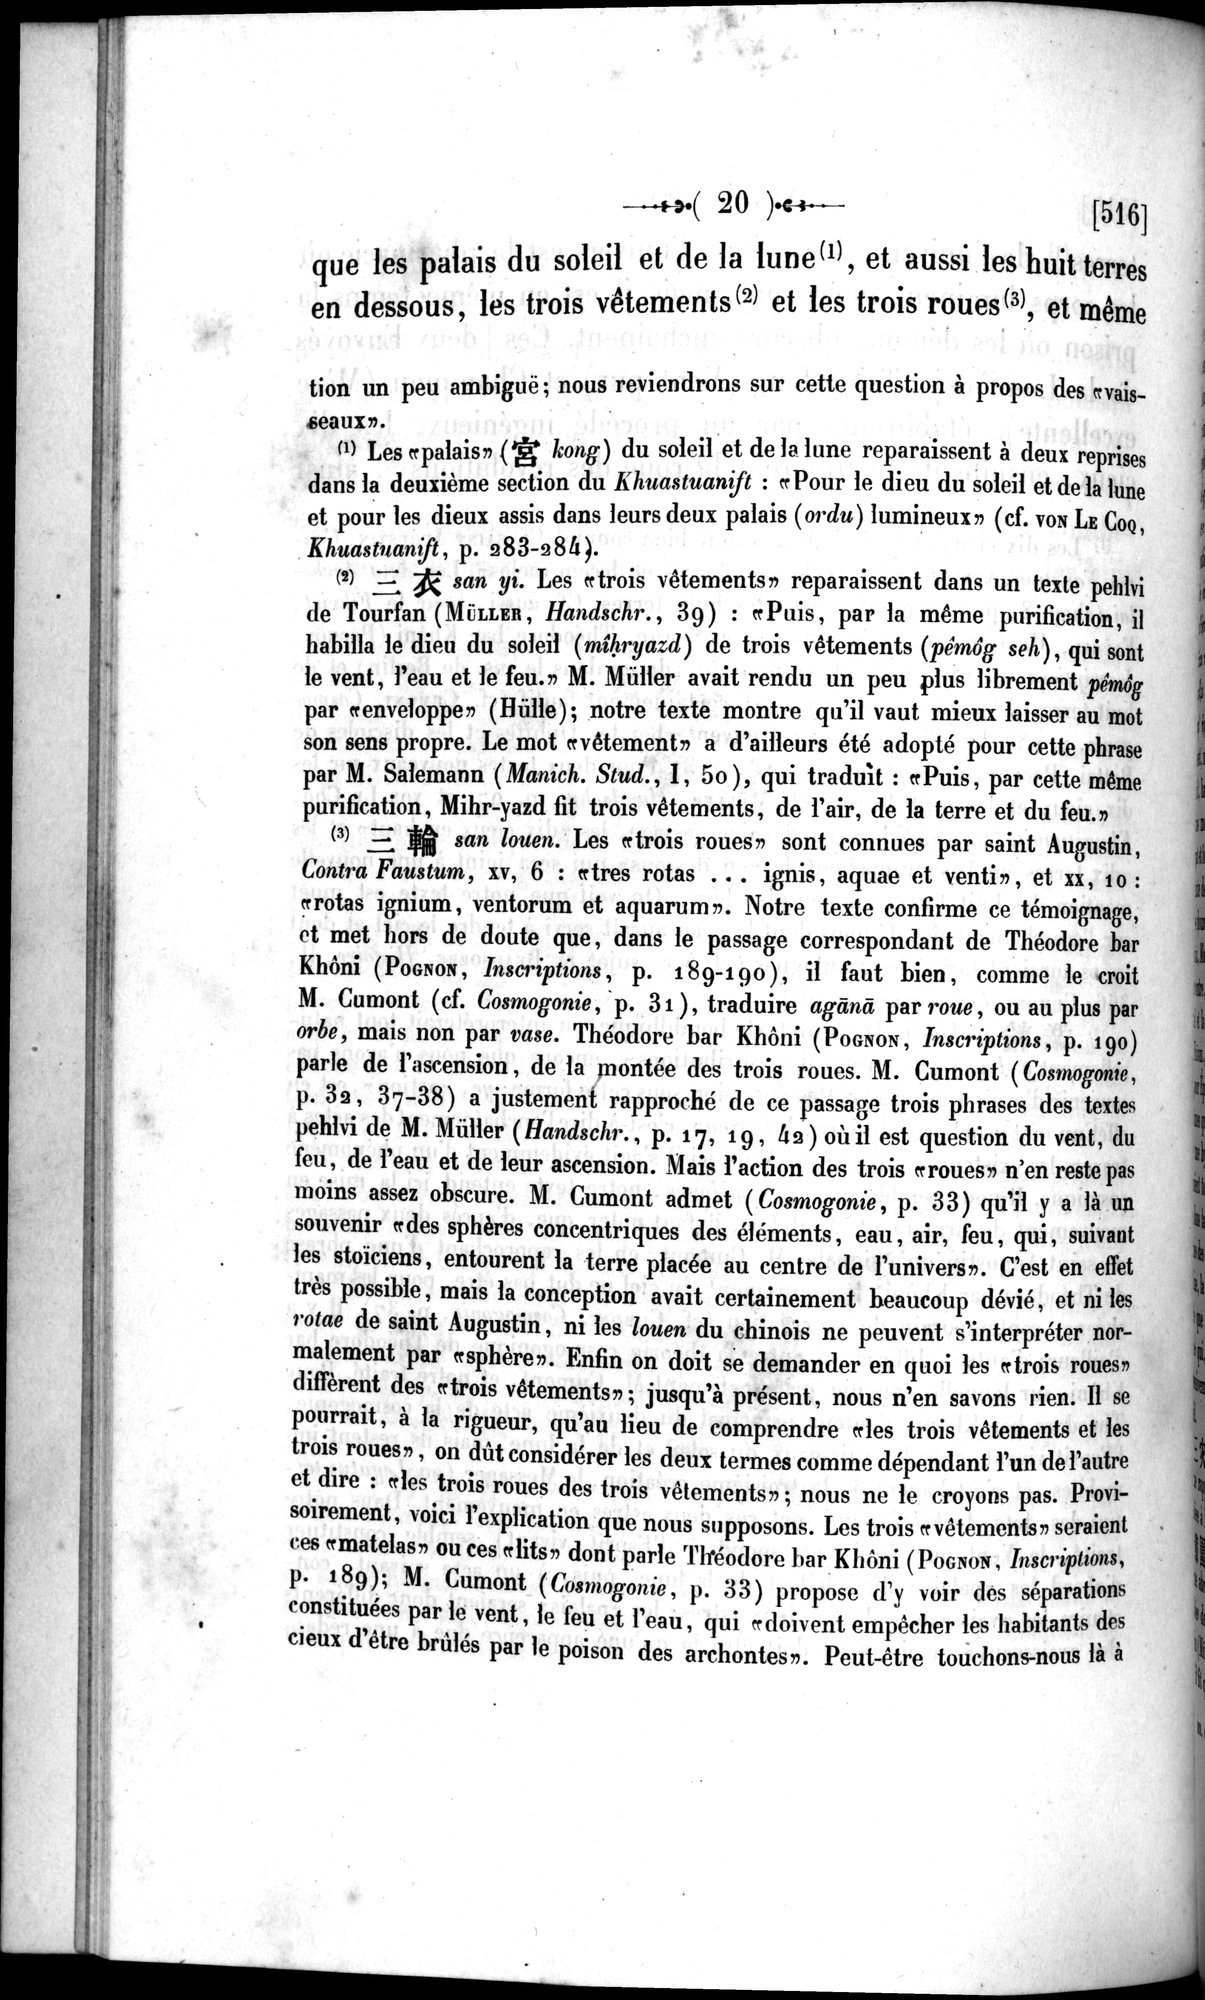 Un traité manichéen retrouvé en Chine : vol.1 / Page 30 (Grayscale High Resolution Image)